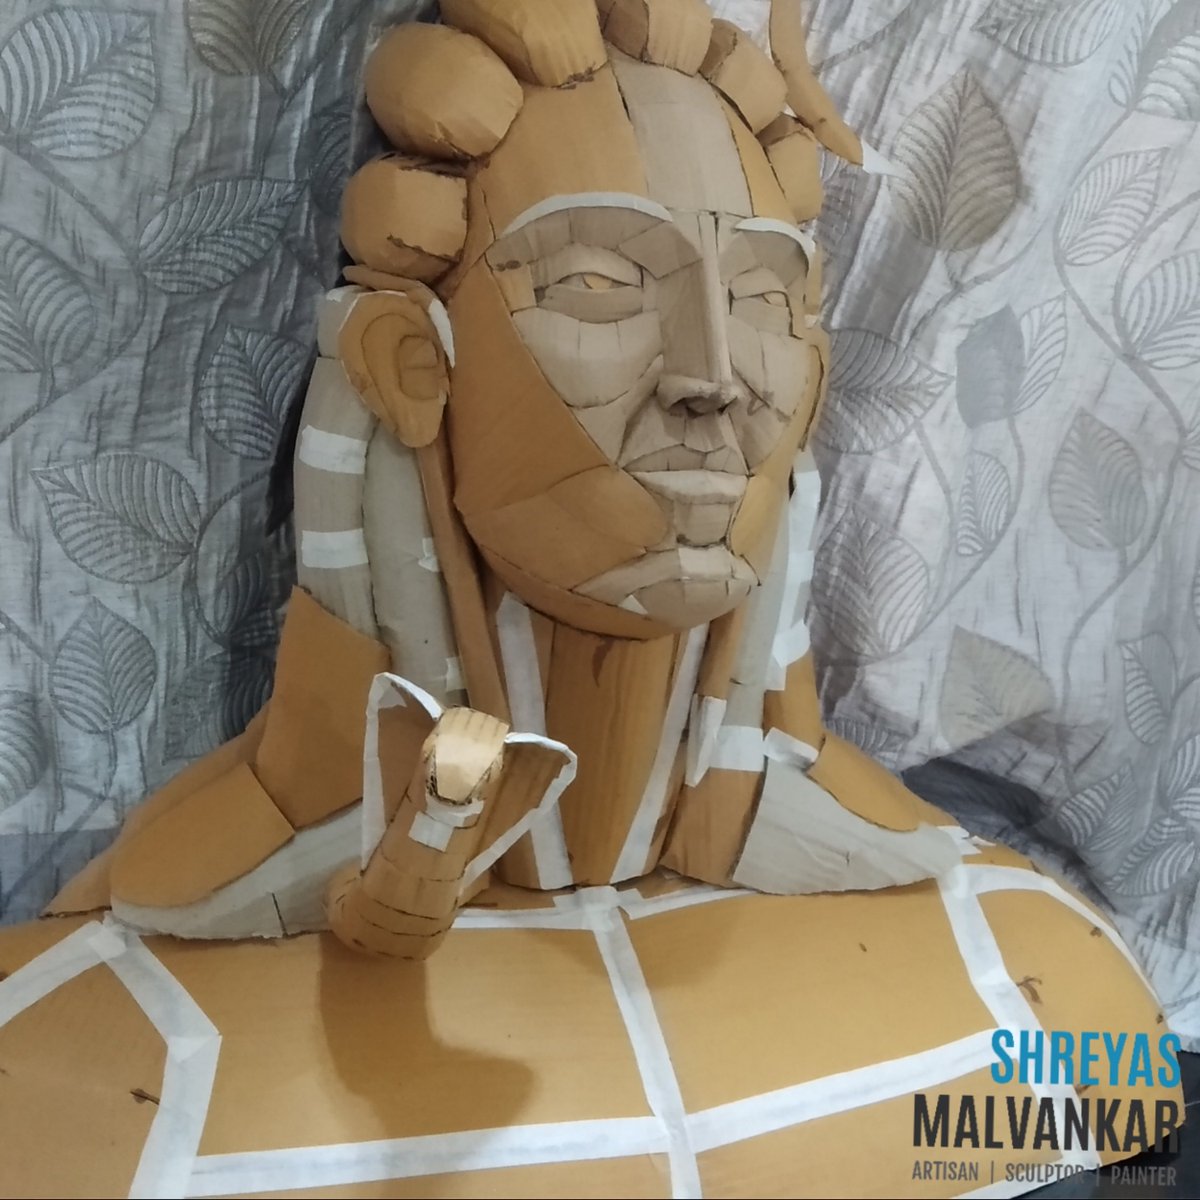 Adiyogi Lord Shiva crafted completely from Cardboard
#lordshiva #smmcreations #cardboard #handmade #handcrafted #toydesigner #artist #cardboardart #handmadecraft #indianmythology #india #indianart #adiyogi #sadhguru #yogi #shiva #ganeshchaturthi #ganpatidecoration #decor